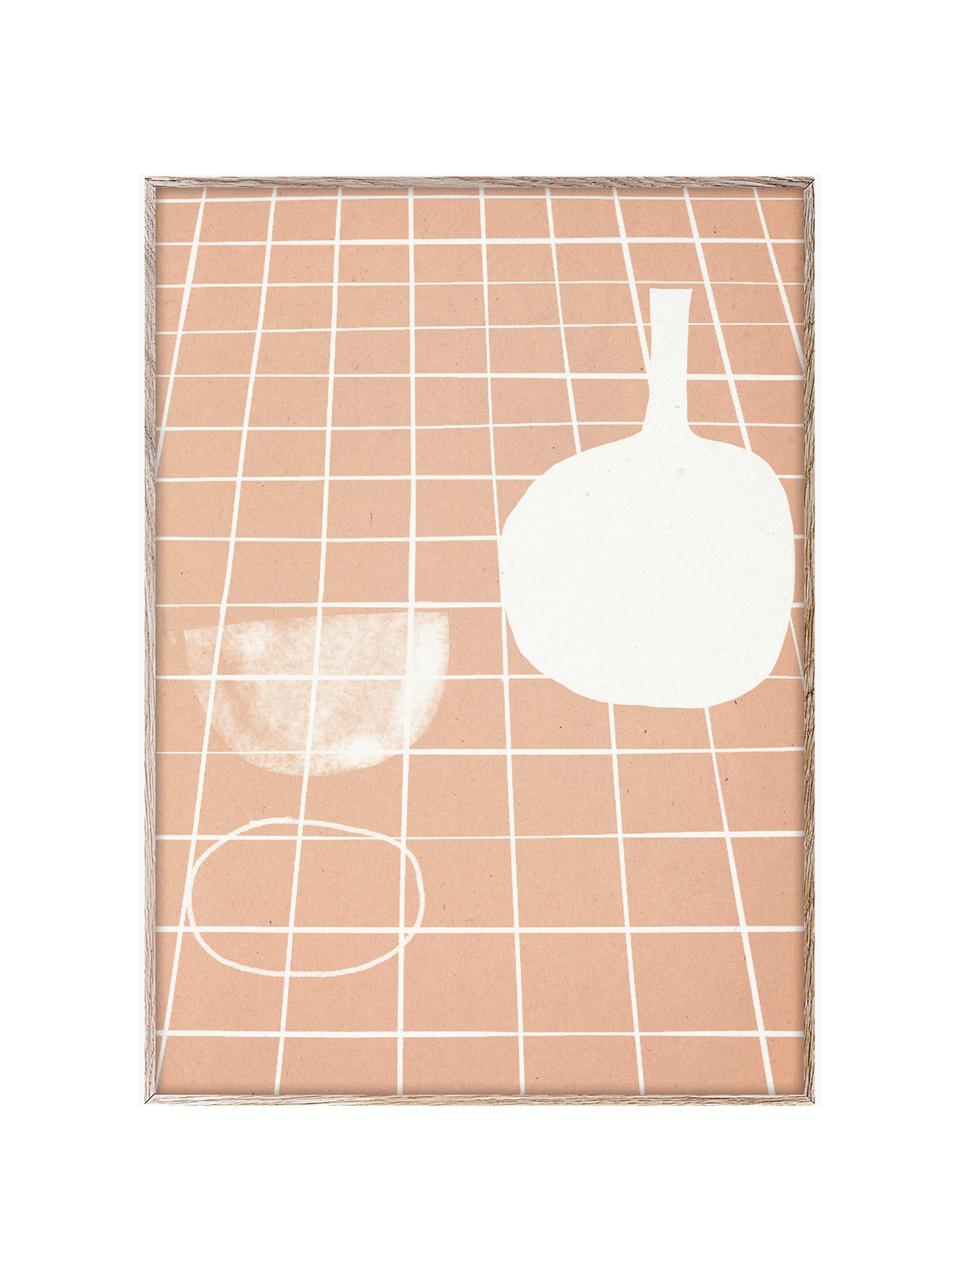 Plakát SDO 07, 210g matný papír Hahnemühle, digitální tisk s 10 barvami odolnými vůči UV záření, Meruňková, tlumeně bílá, Š 30 cm, V 40 cm